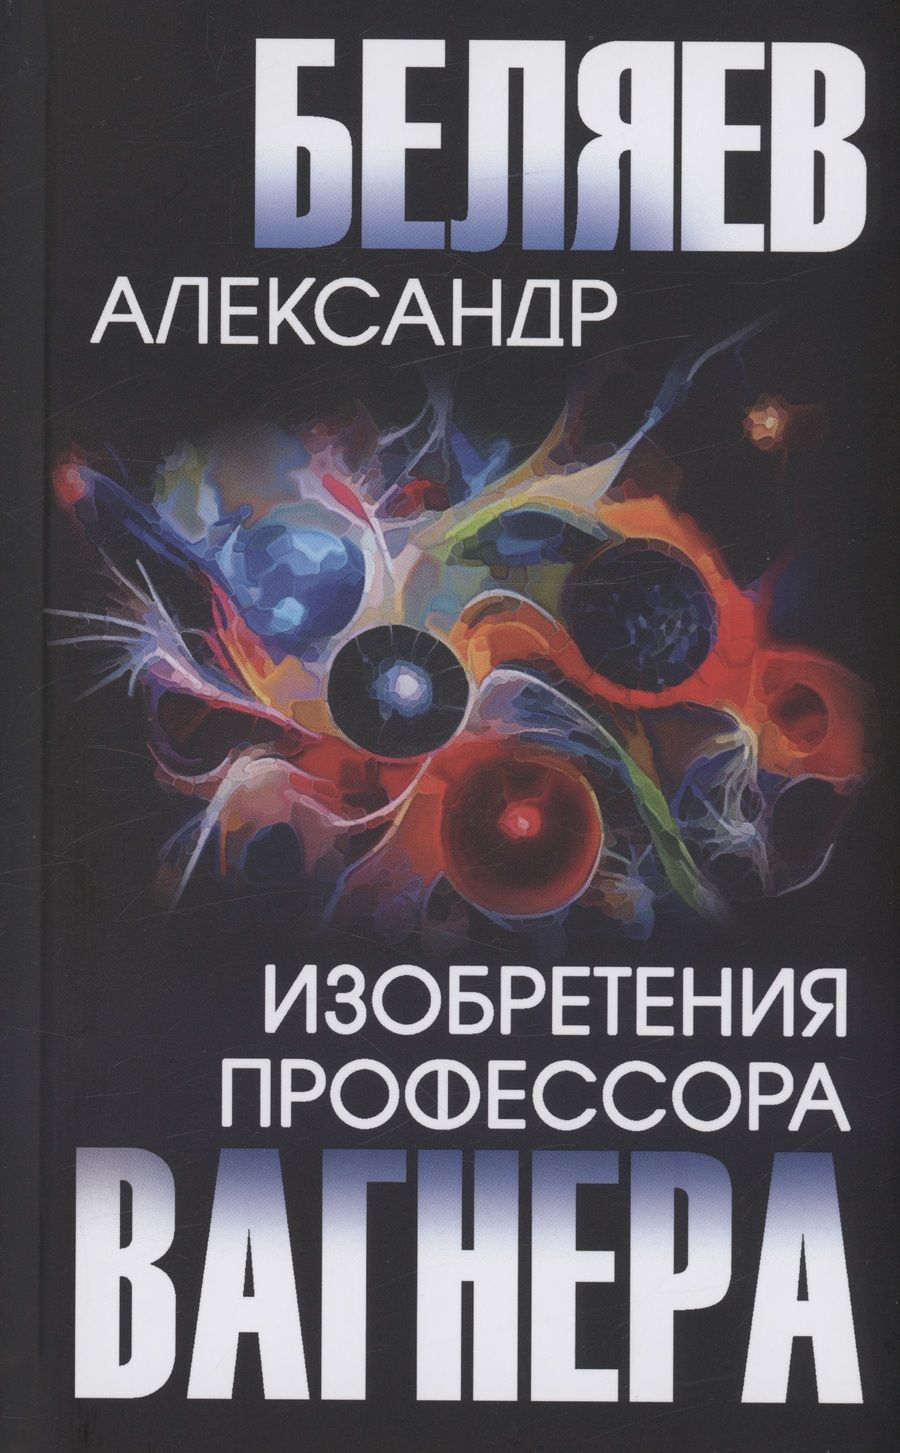 Обложка книги "Беляев: Изобретения профессора Вагнера"